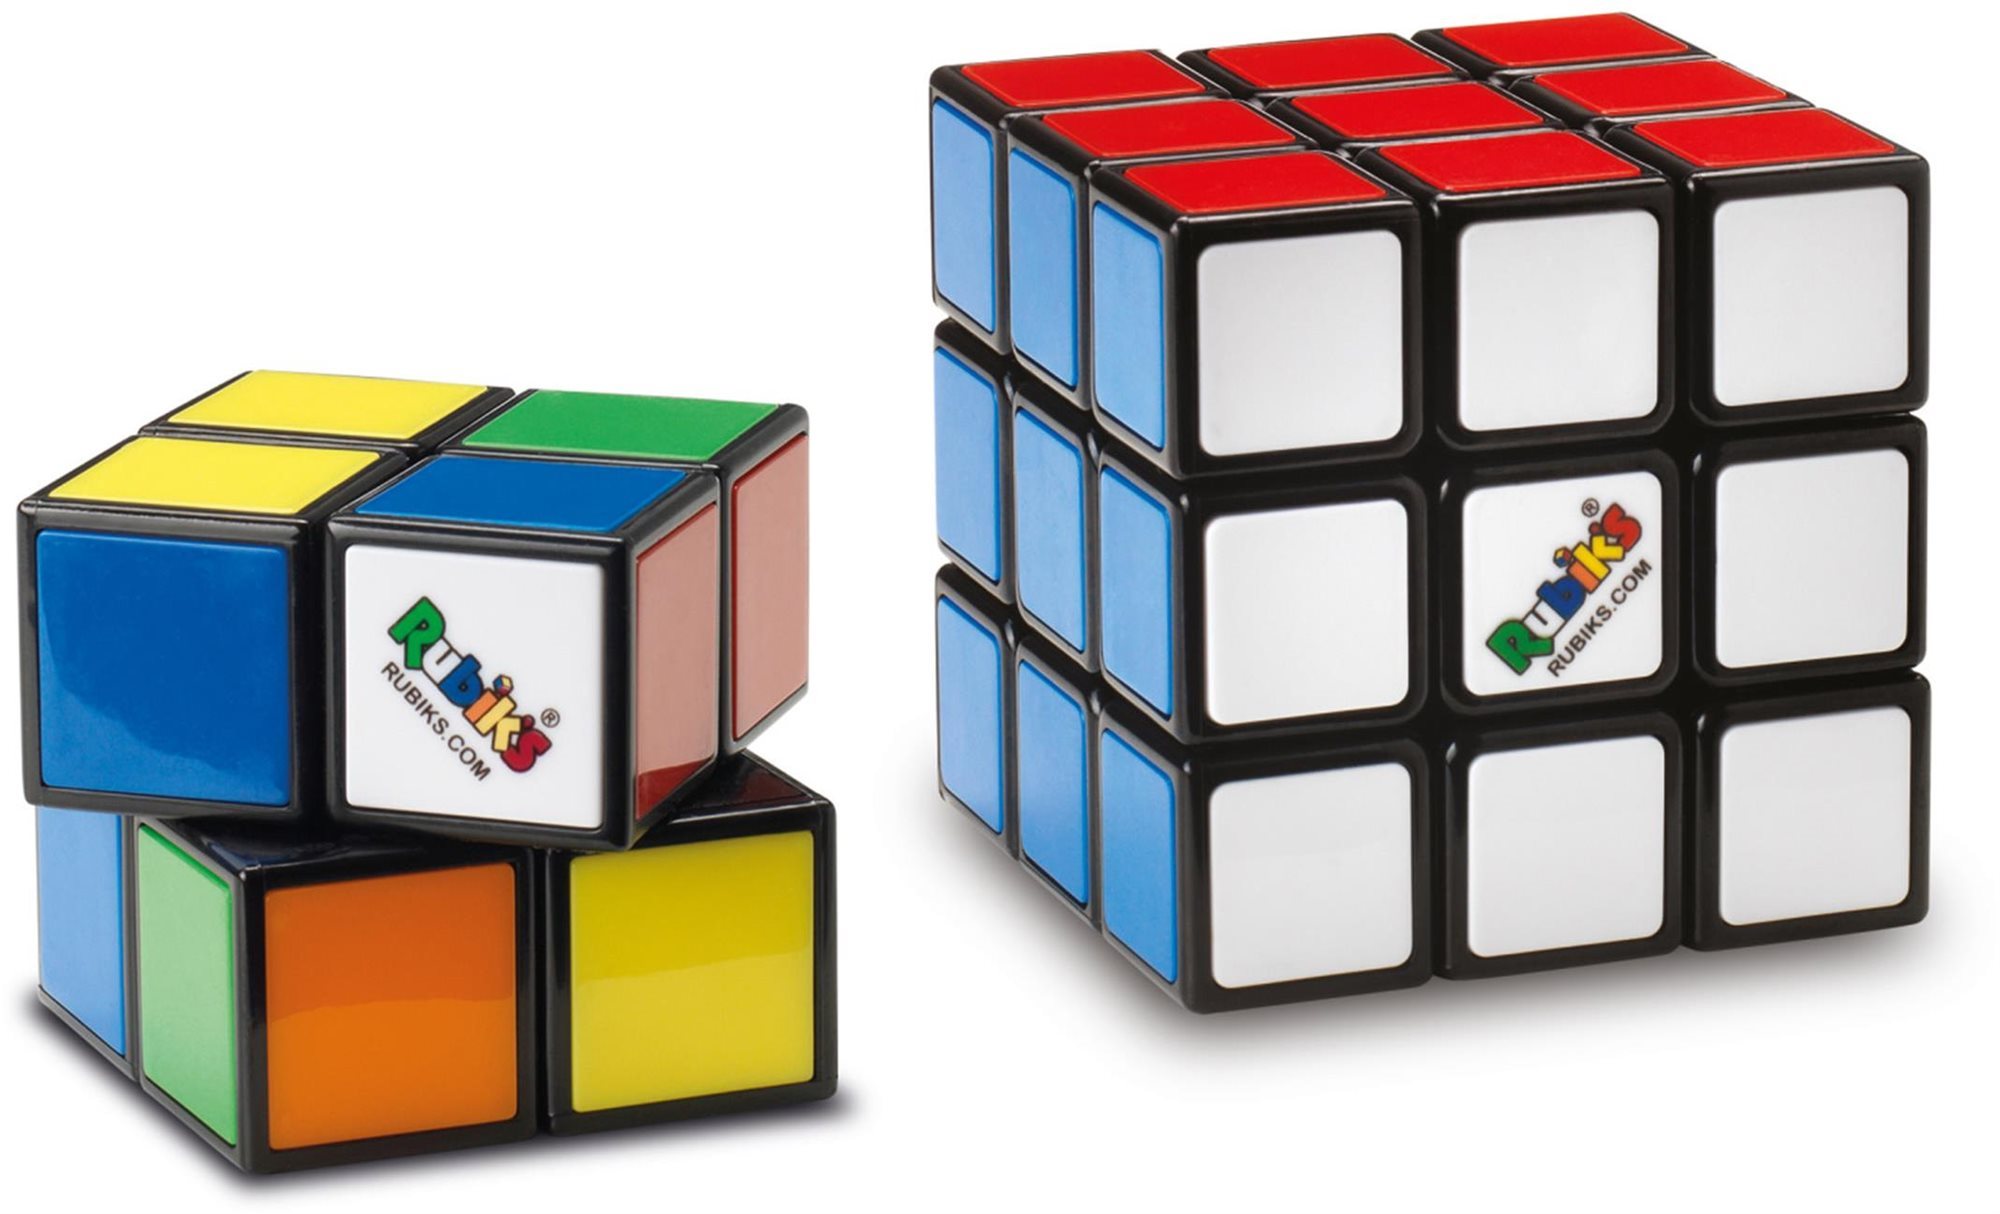 Logikai játék Rubik-kocka Duo készlet 3x3 + 2x2